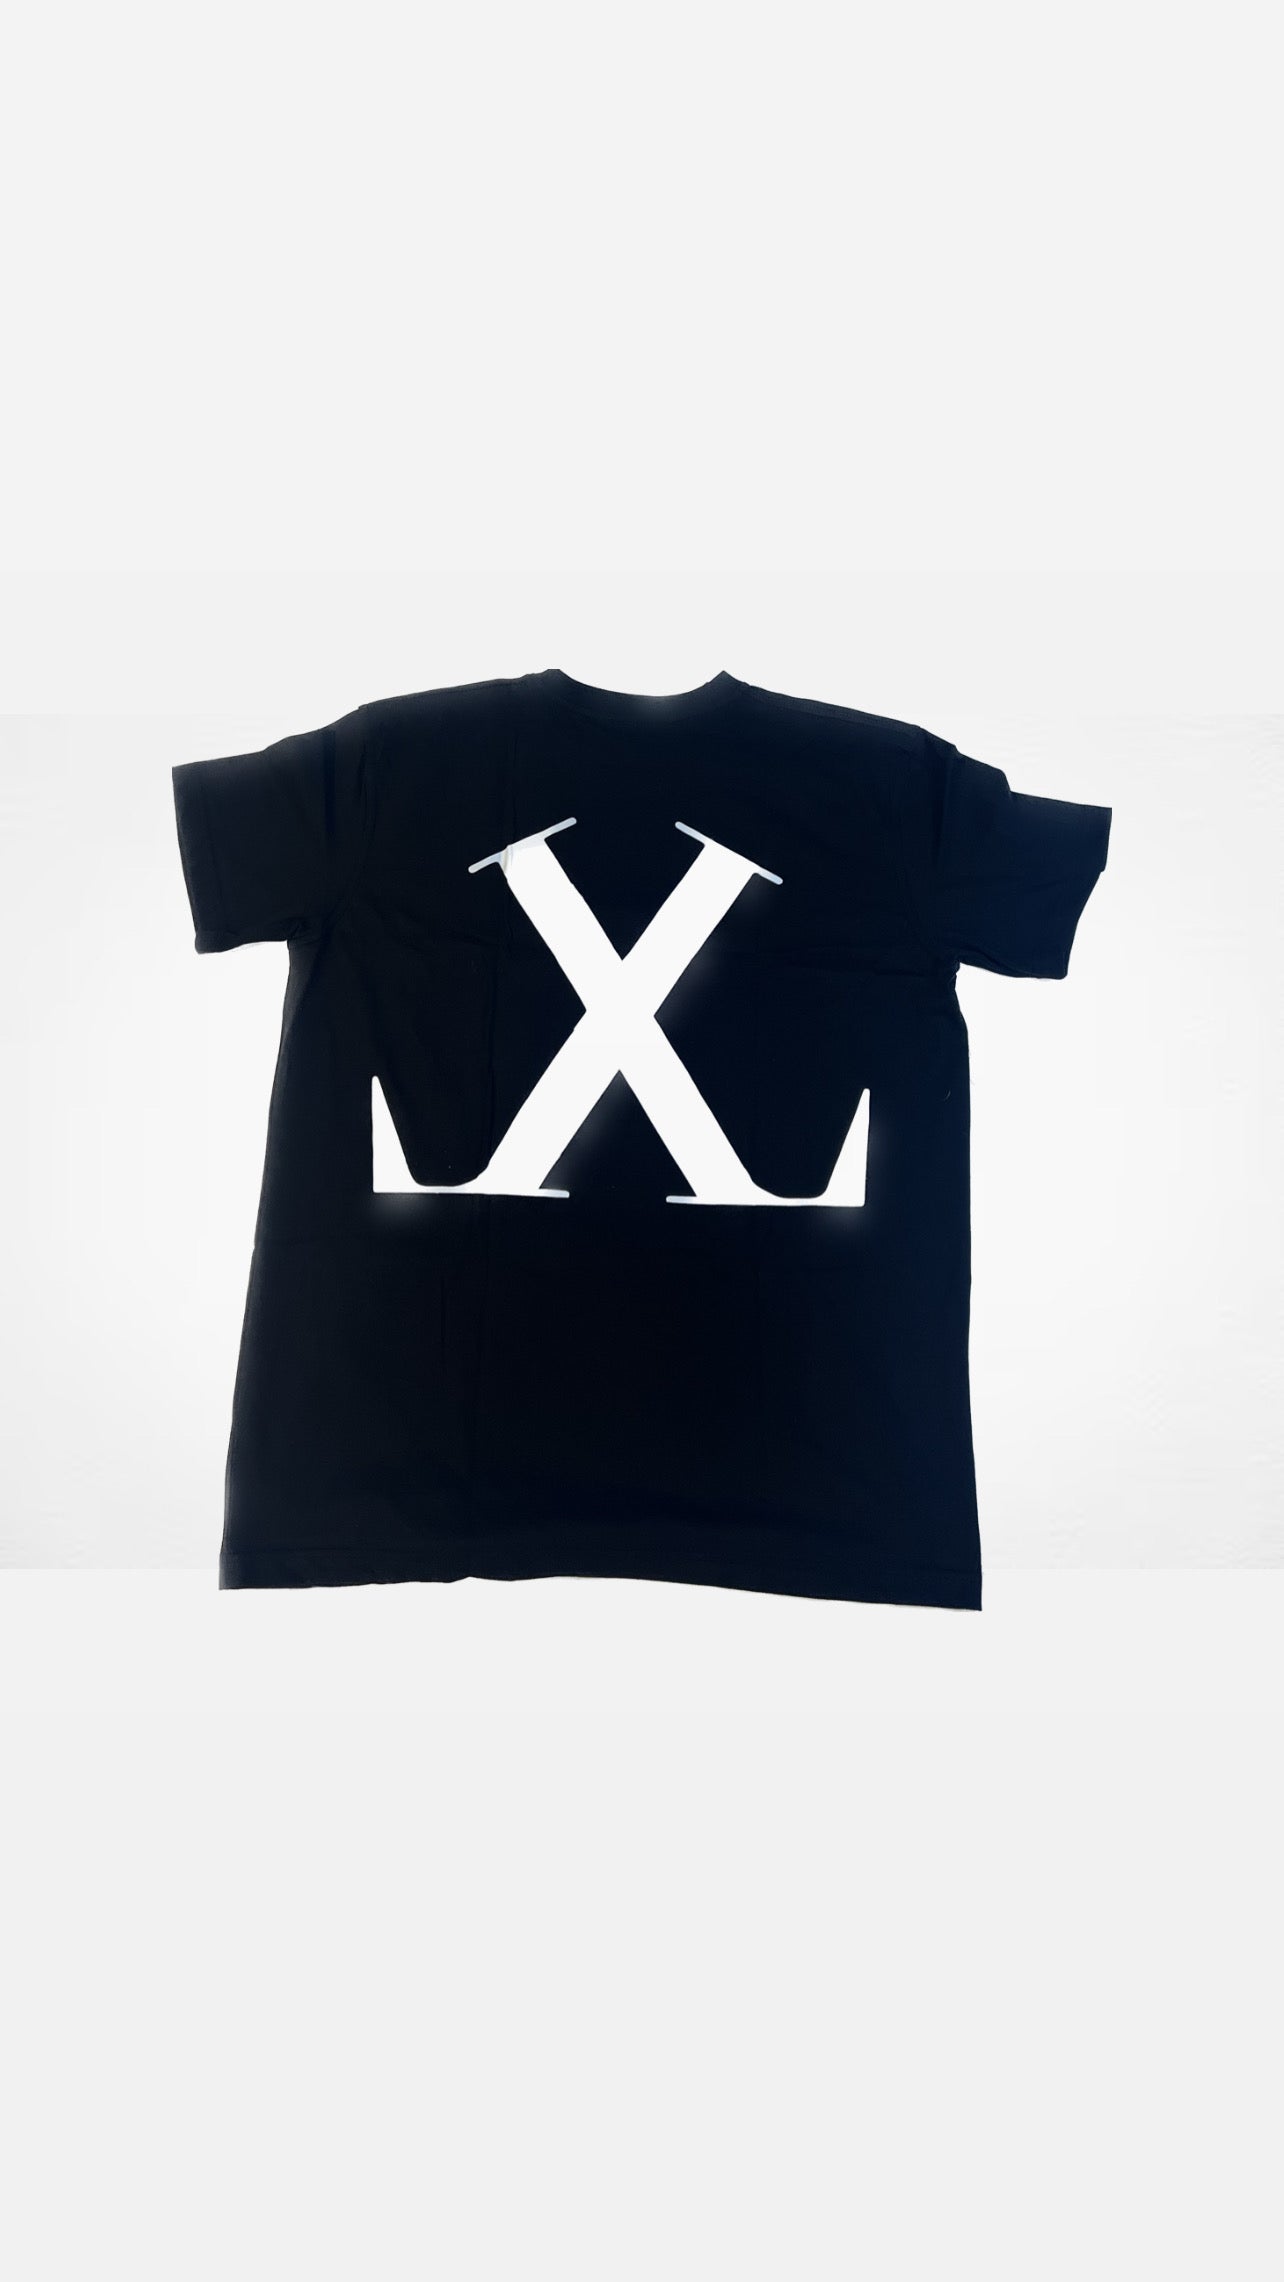 LxL T Shirts